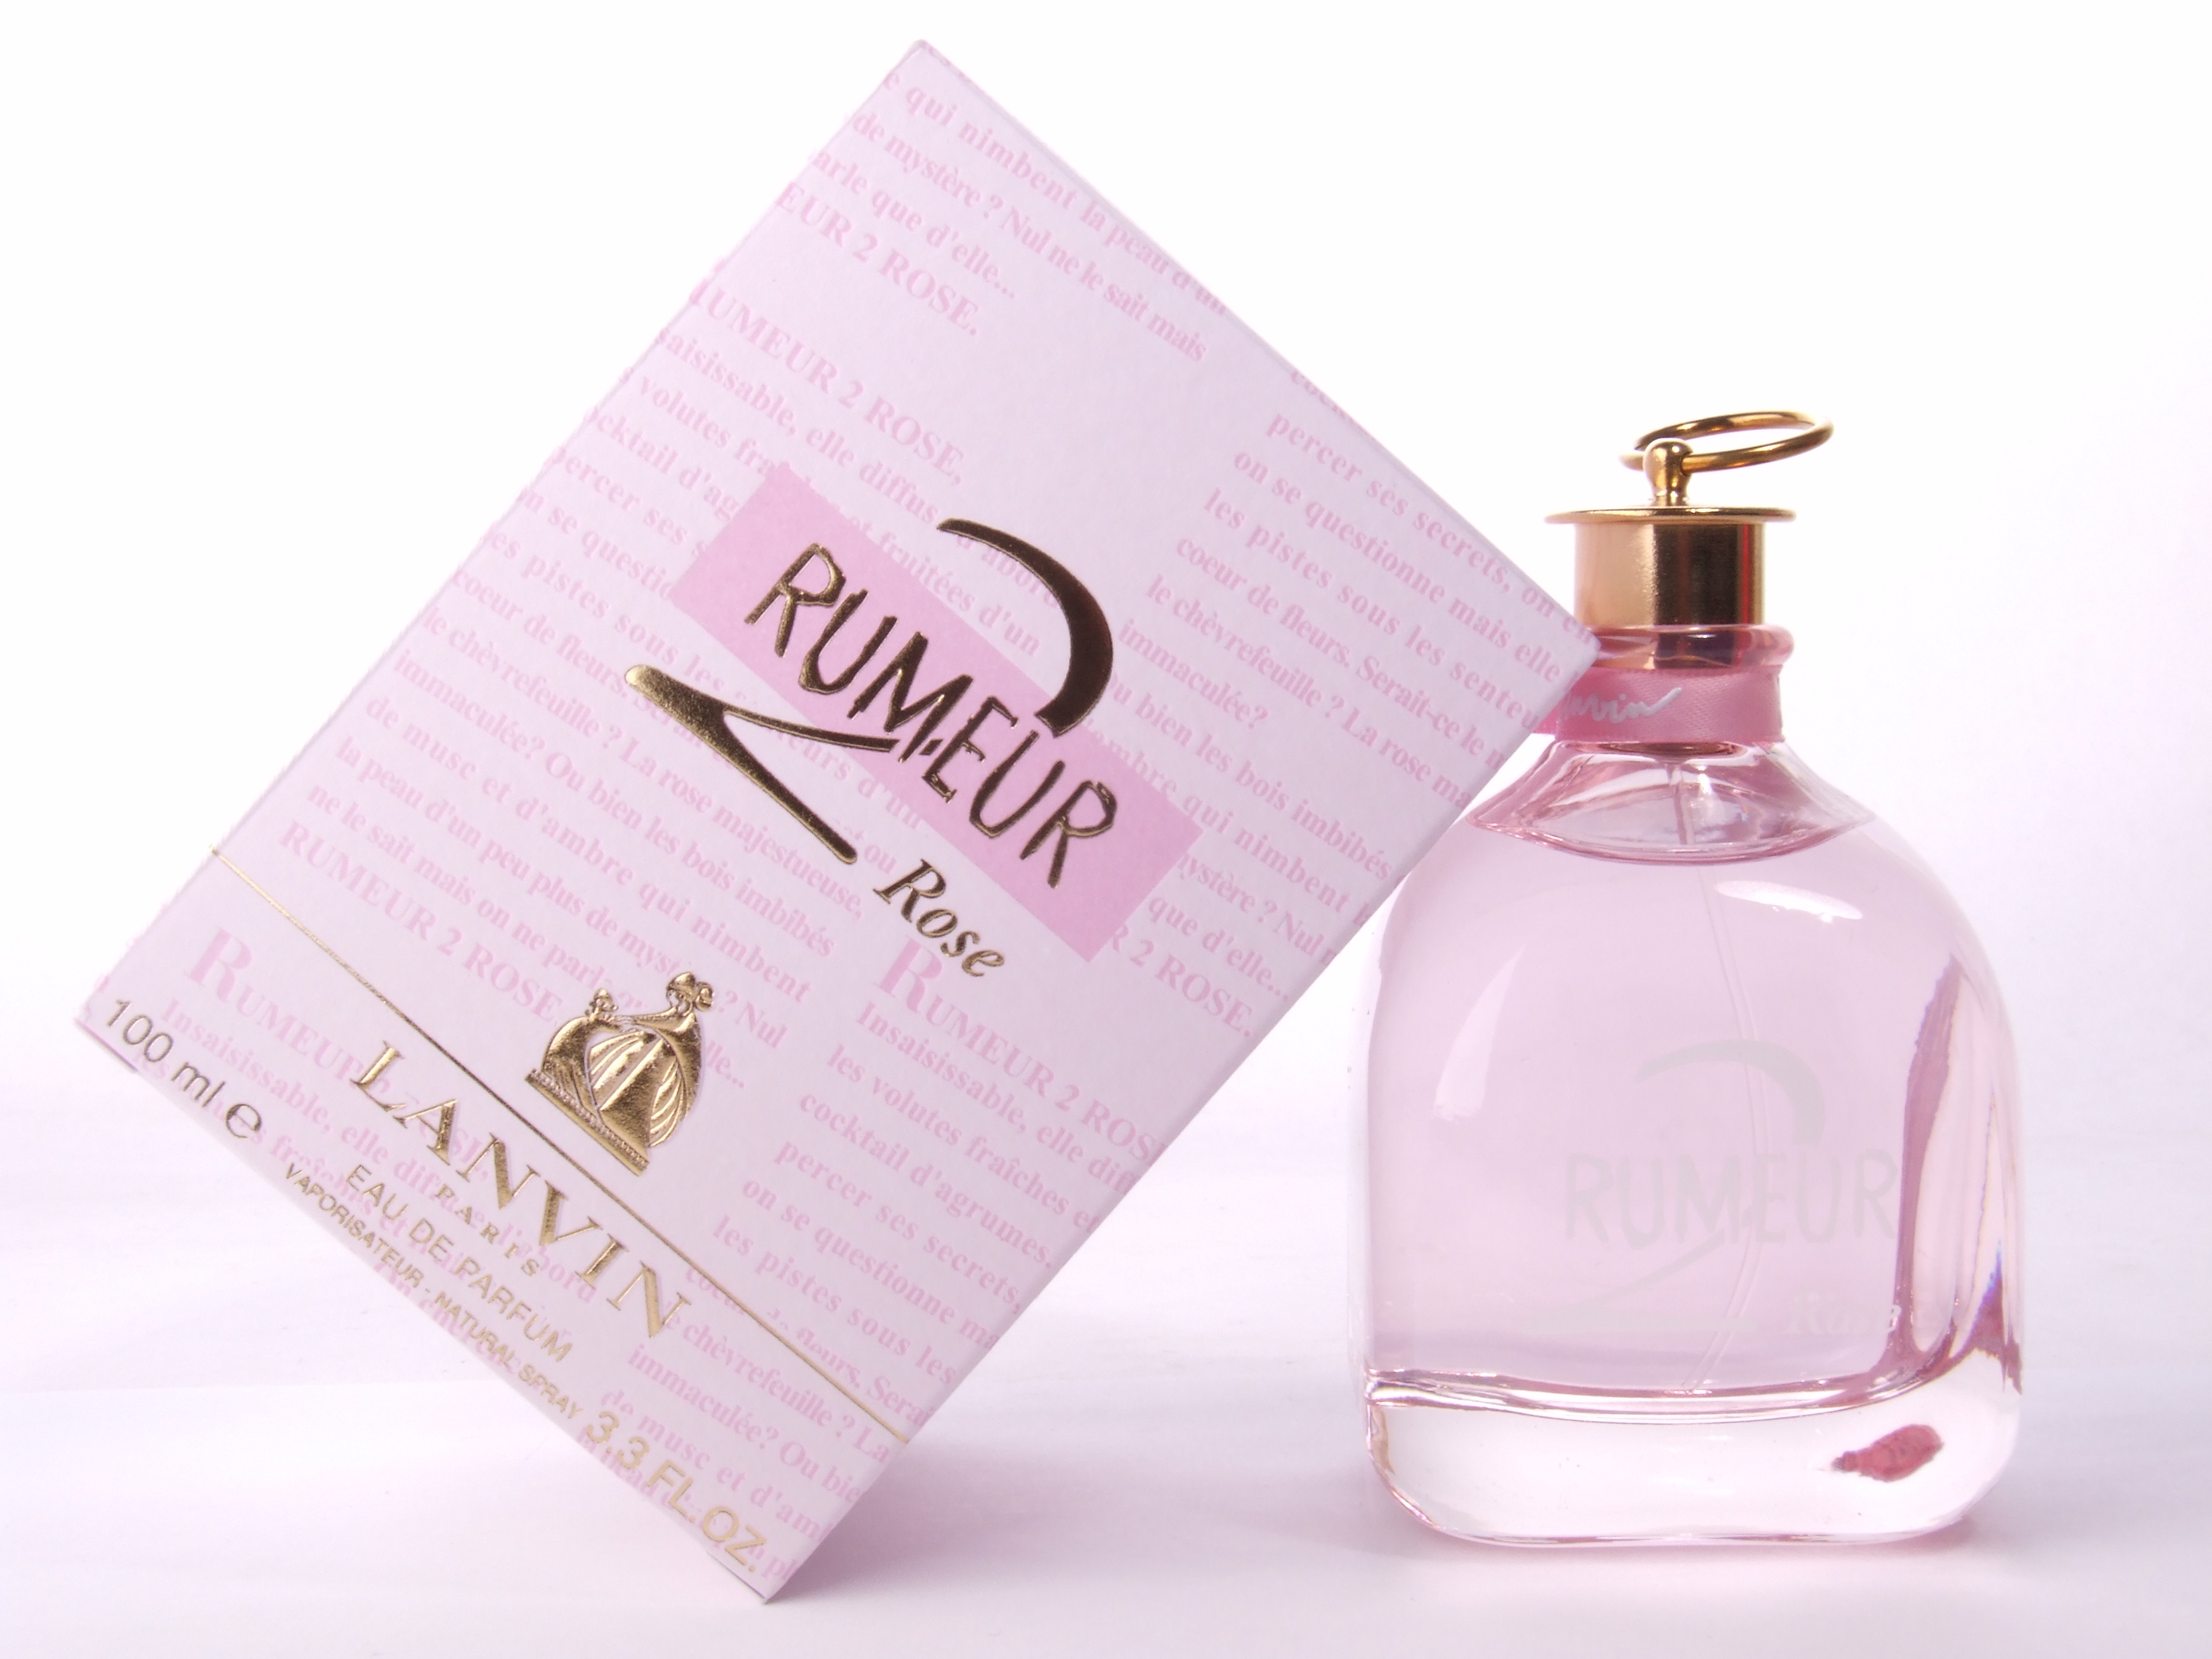  Lanvin rumeur 2 rose  -